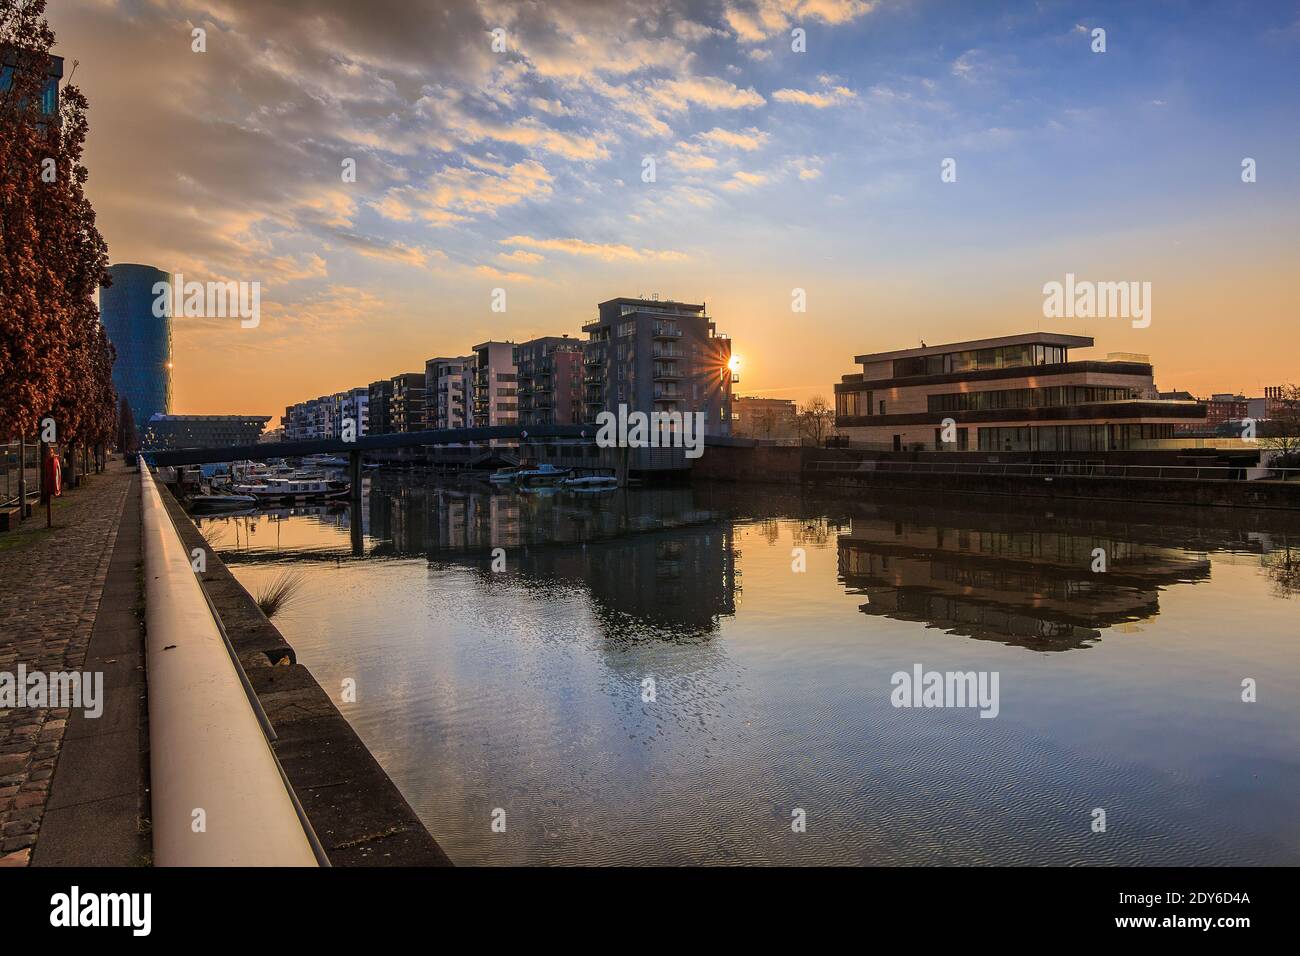 Wohngebiet am Main-Kanal in Frankfurt bei Sonnenaufgang. Wasserfront mit Reflexion. Blauer Himmel und Wolken.Ufer im Hafen und Gebäude Stockfoto